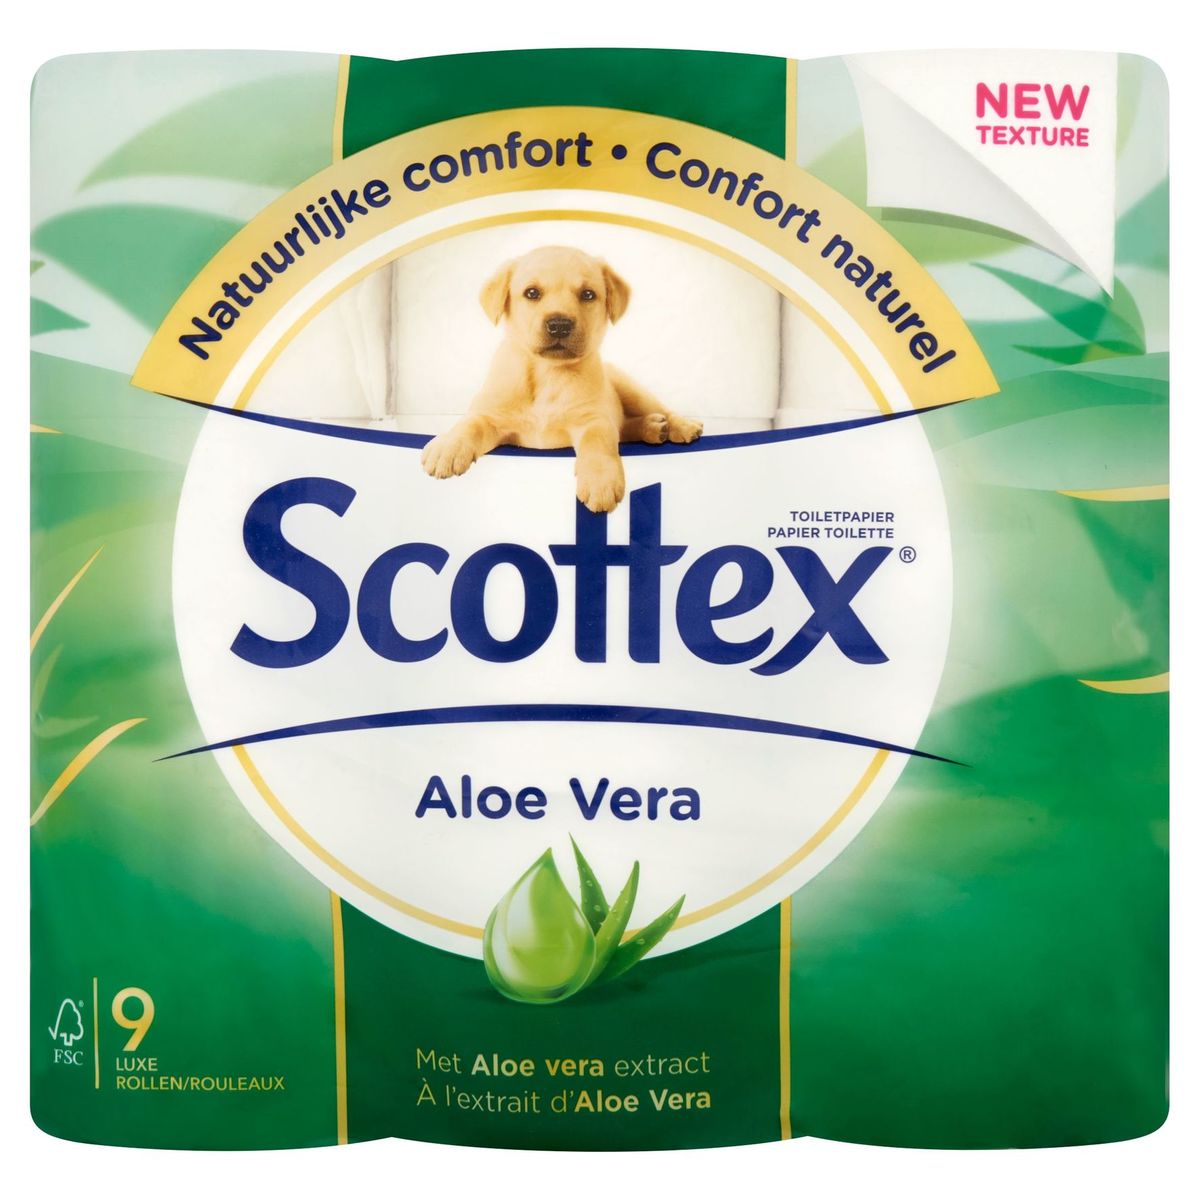 Scottex Toiletpapier Aloe Vera 9 Luxe Rollen